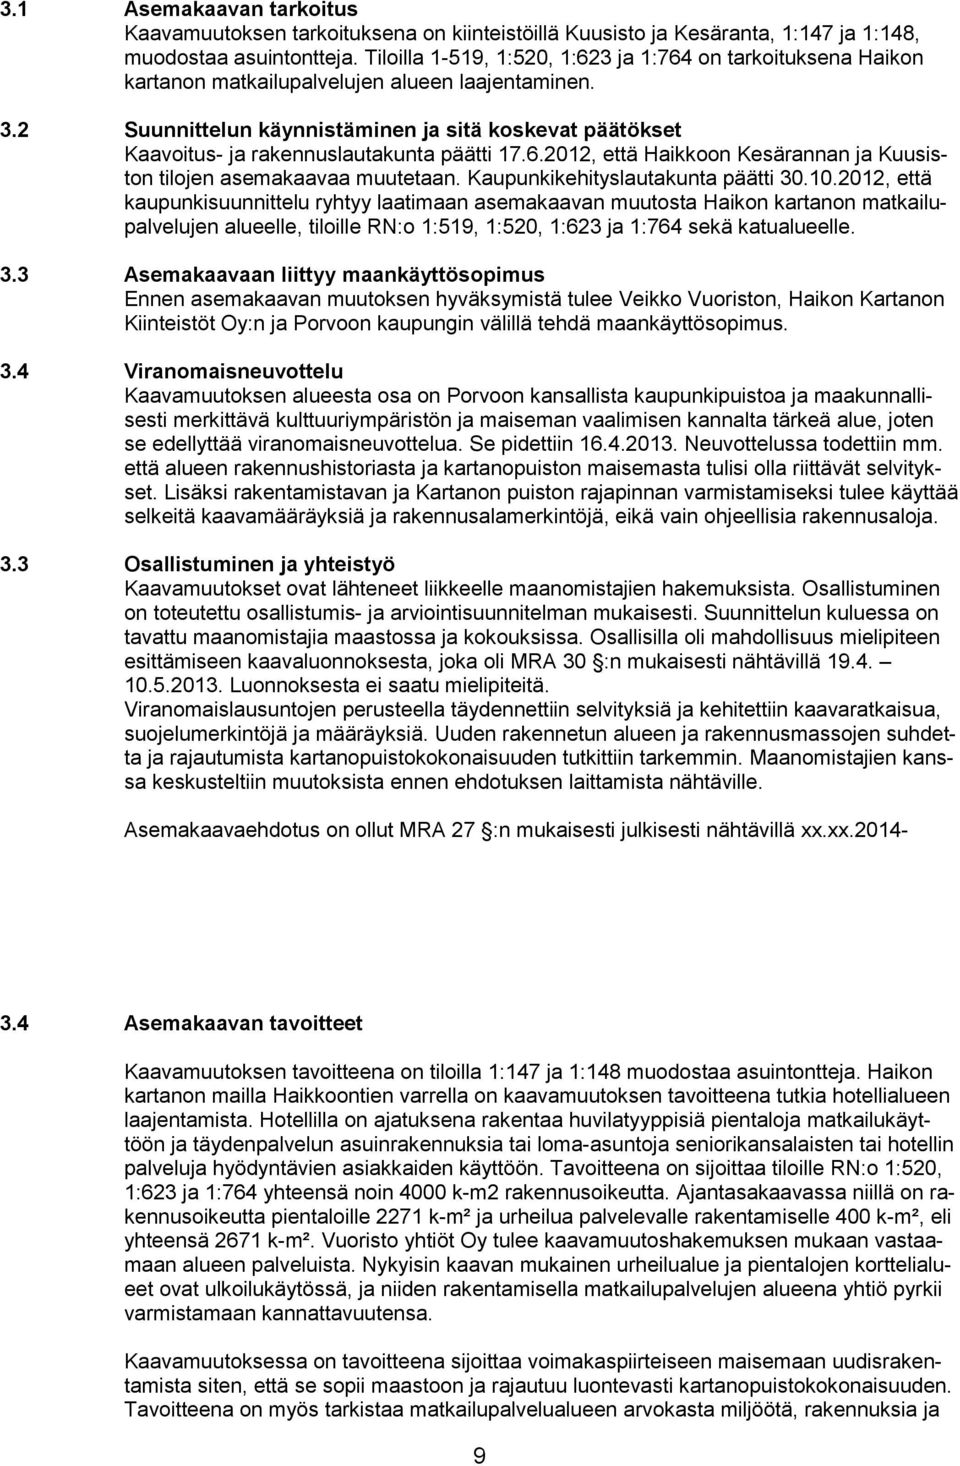 2 Suunnittelun käynnistäminen ja sitä koskevat päätökset Kaavoitus- ja rakennuslautakunta päätti 17.6.2012, että Haikkoon Kesärannan ja Kuusiston tilojen asemakaavaa muutetaan.